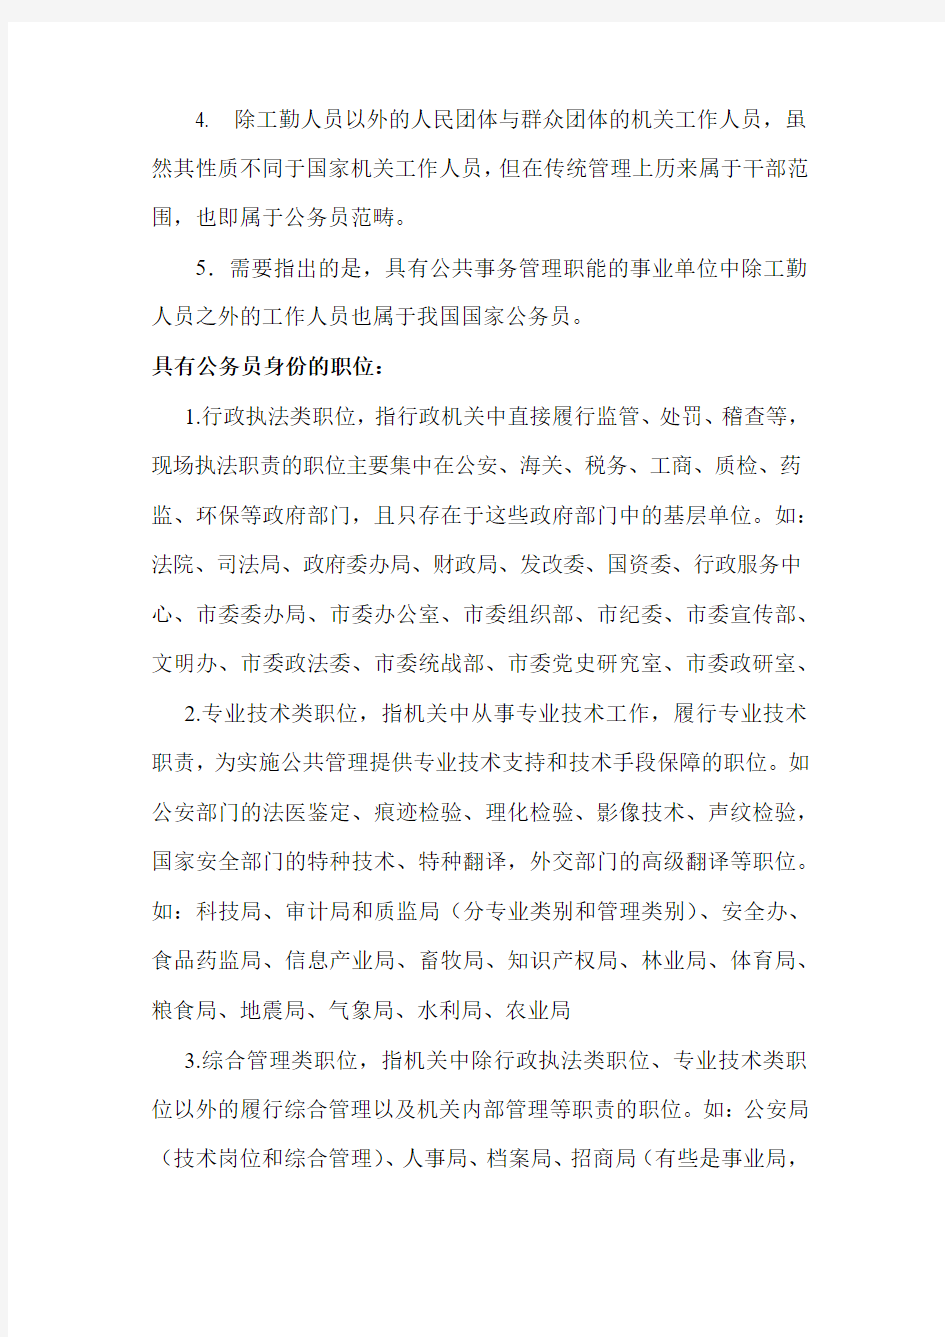 中国国家公务员制度的实施范围和各岗位名称举例